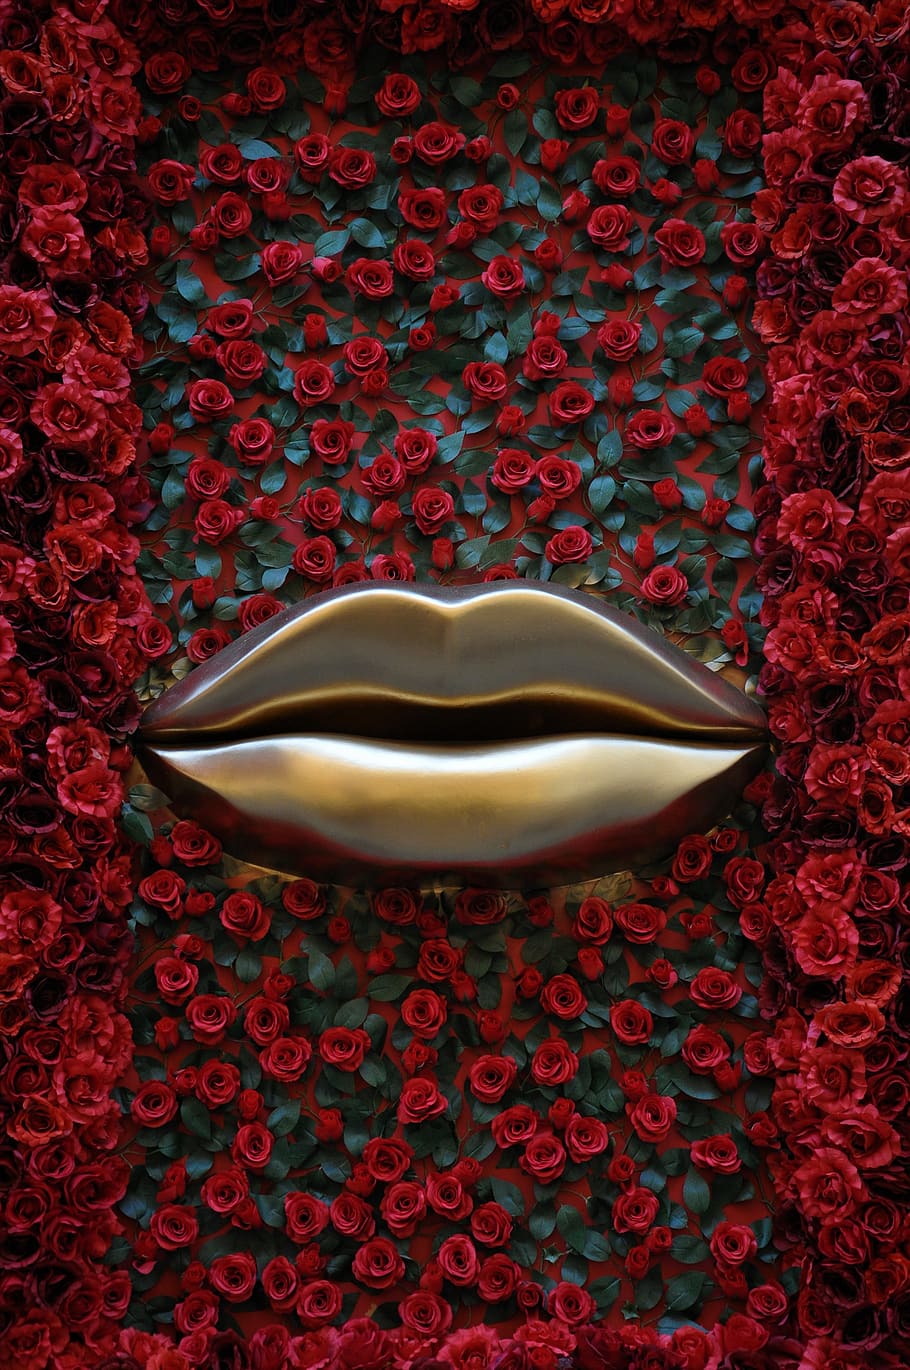 lips, roses, red, golden, bordeaux, love, cosmetology, lviv, ukraine, flowers